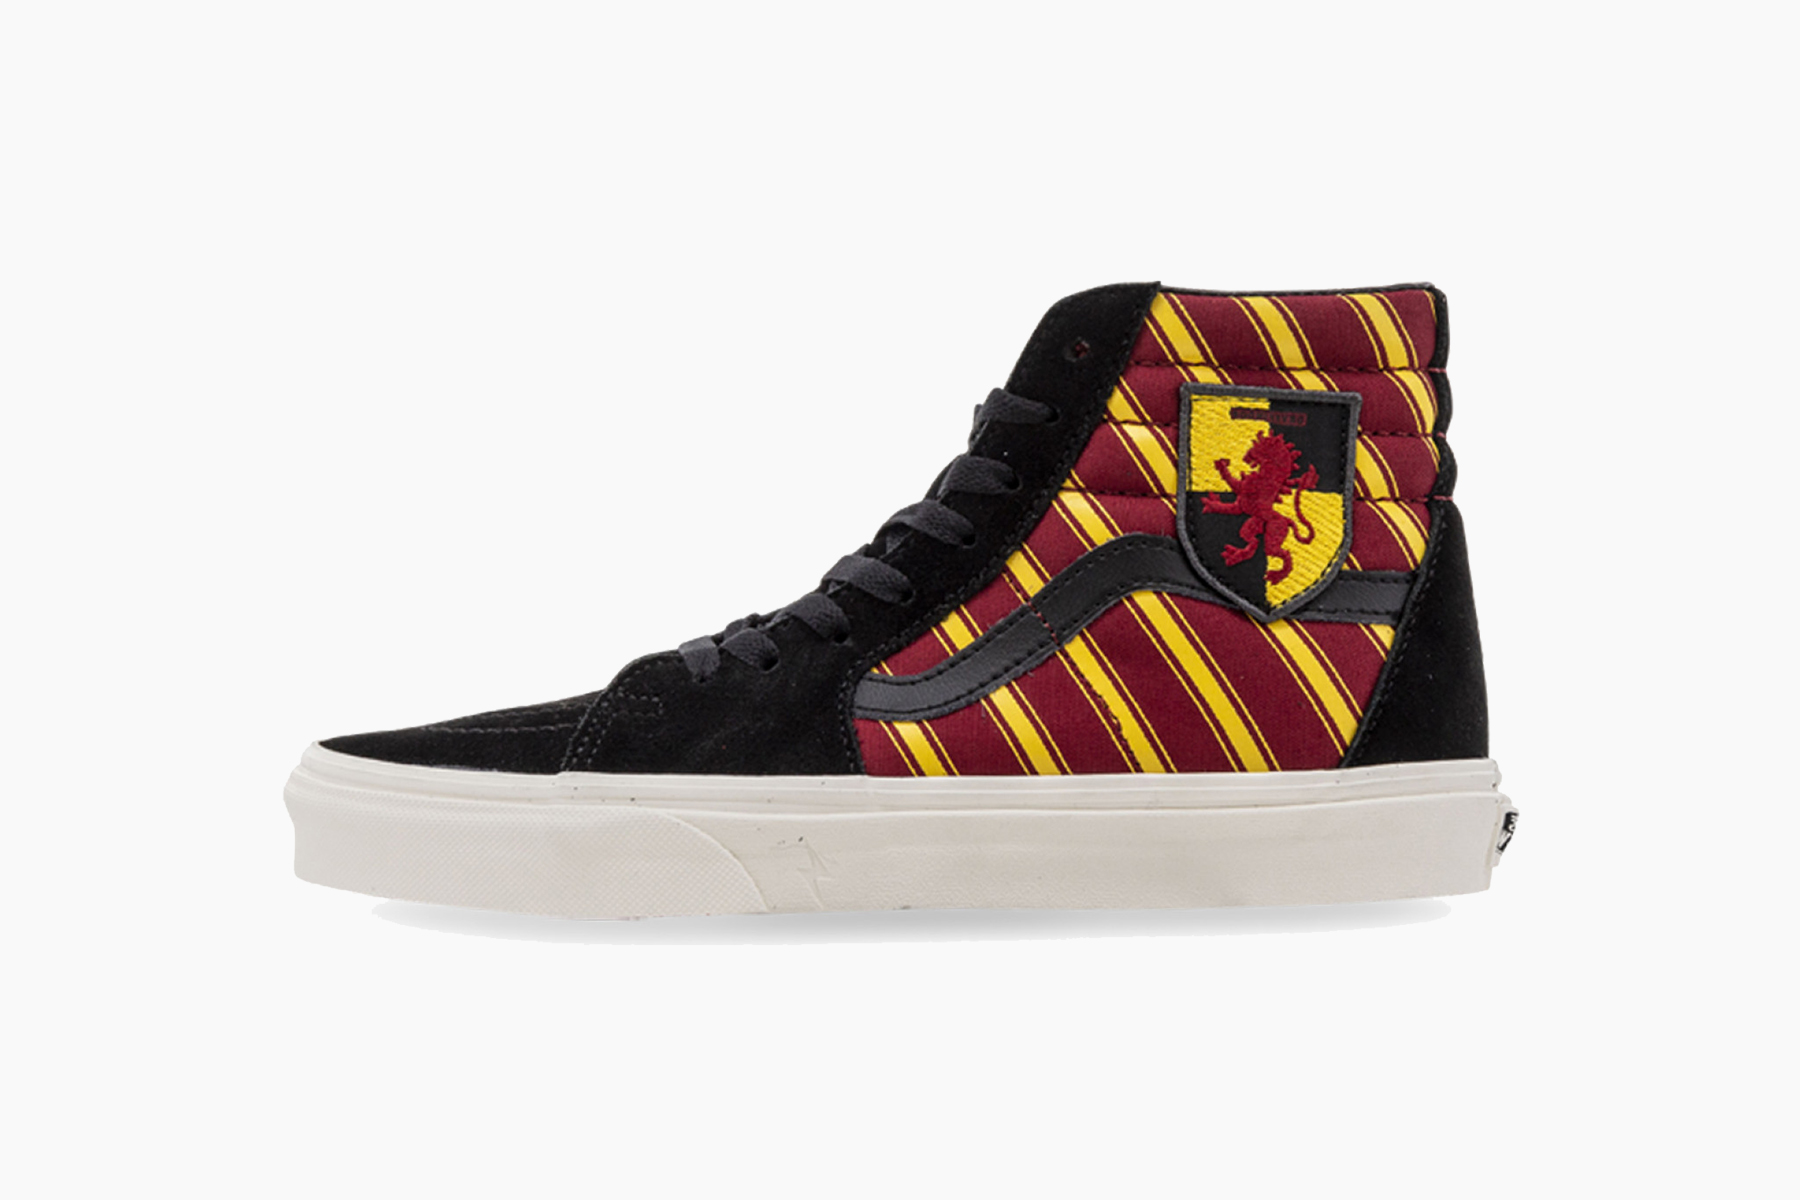 'Harry Potter' x Vans Collab Sneaker Release